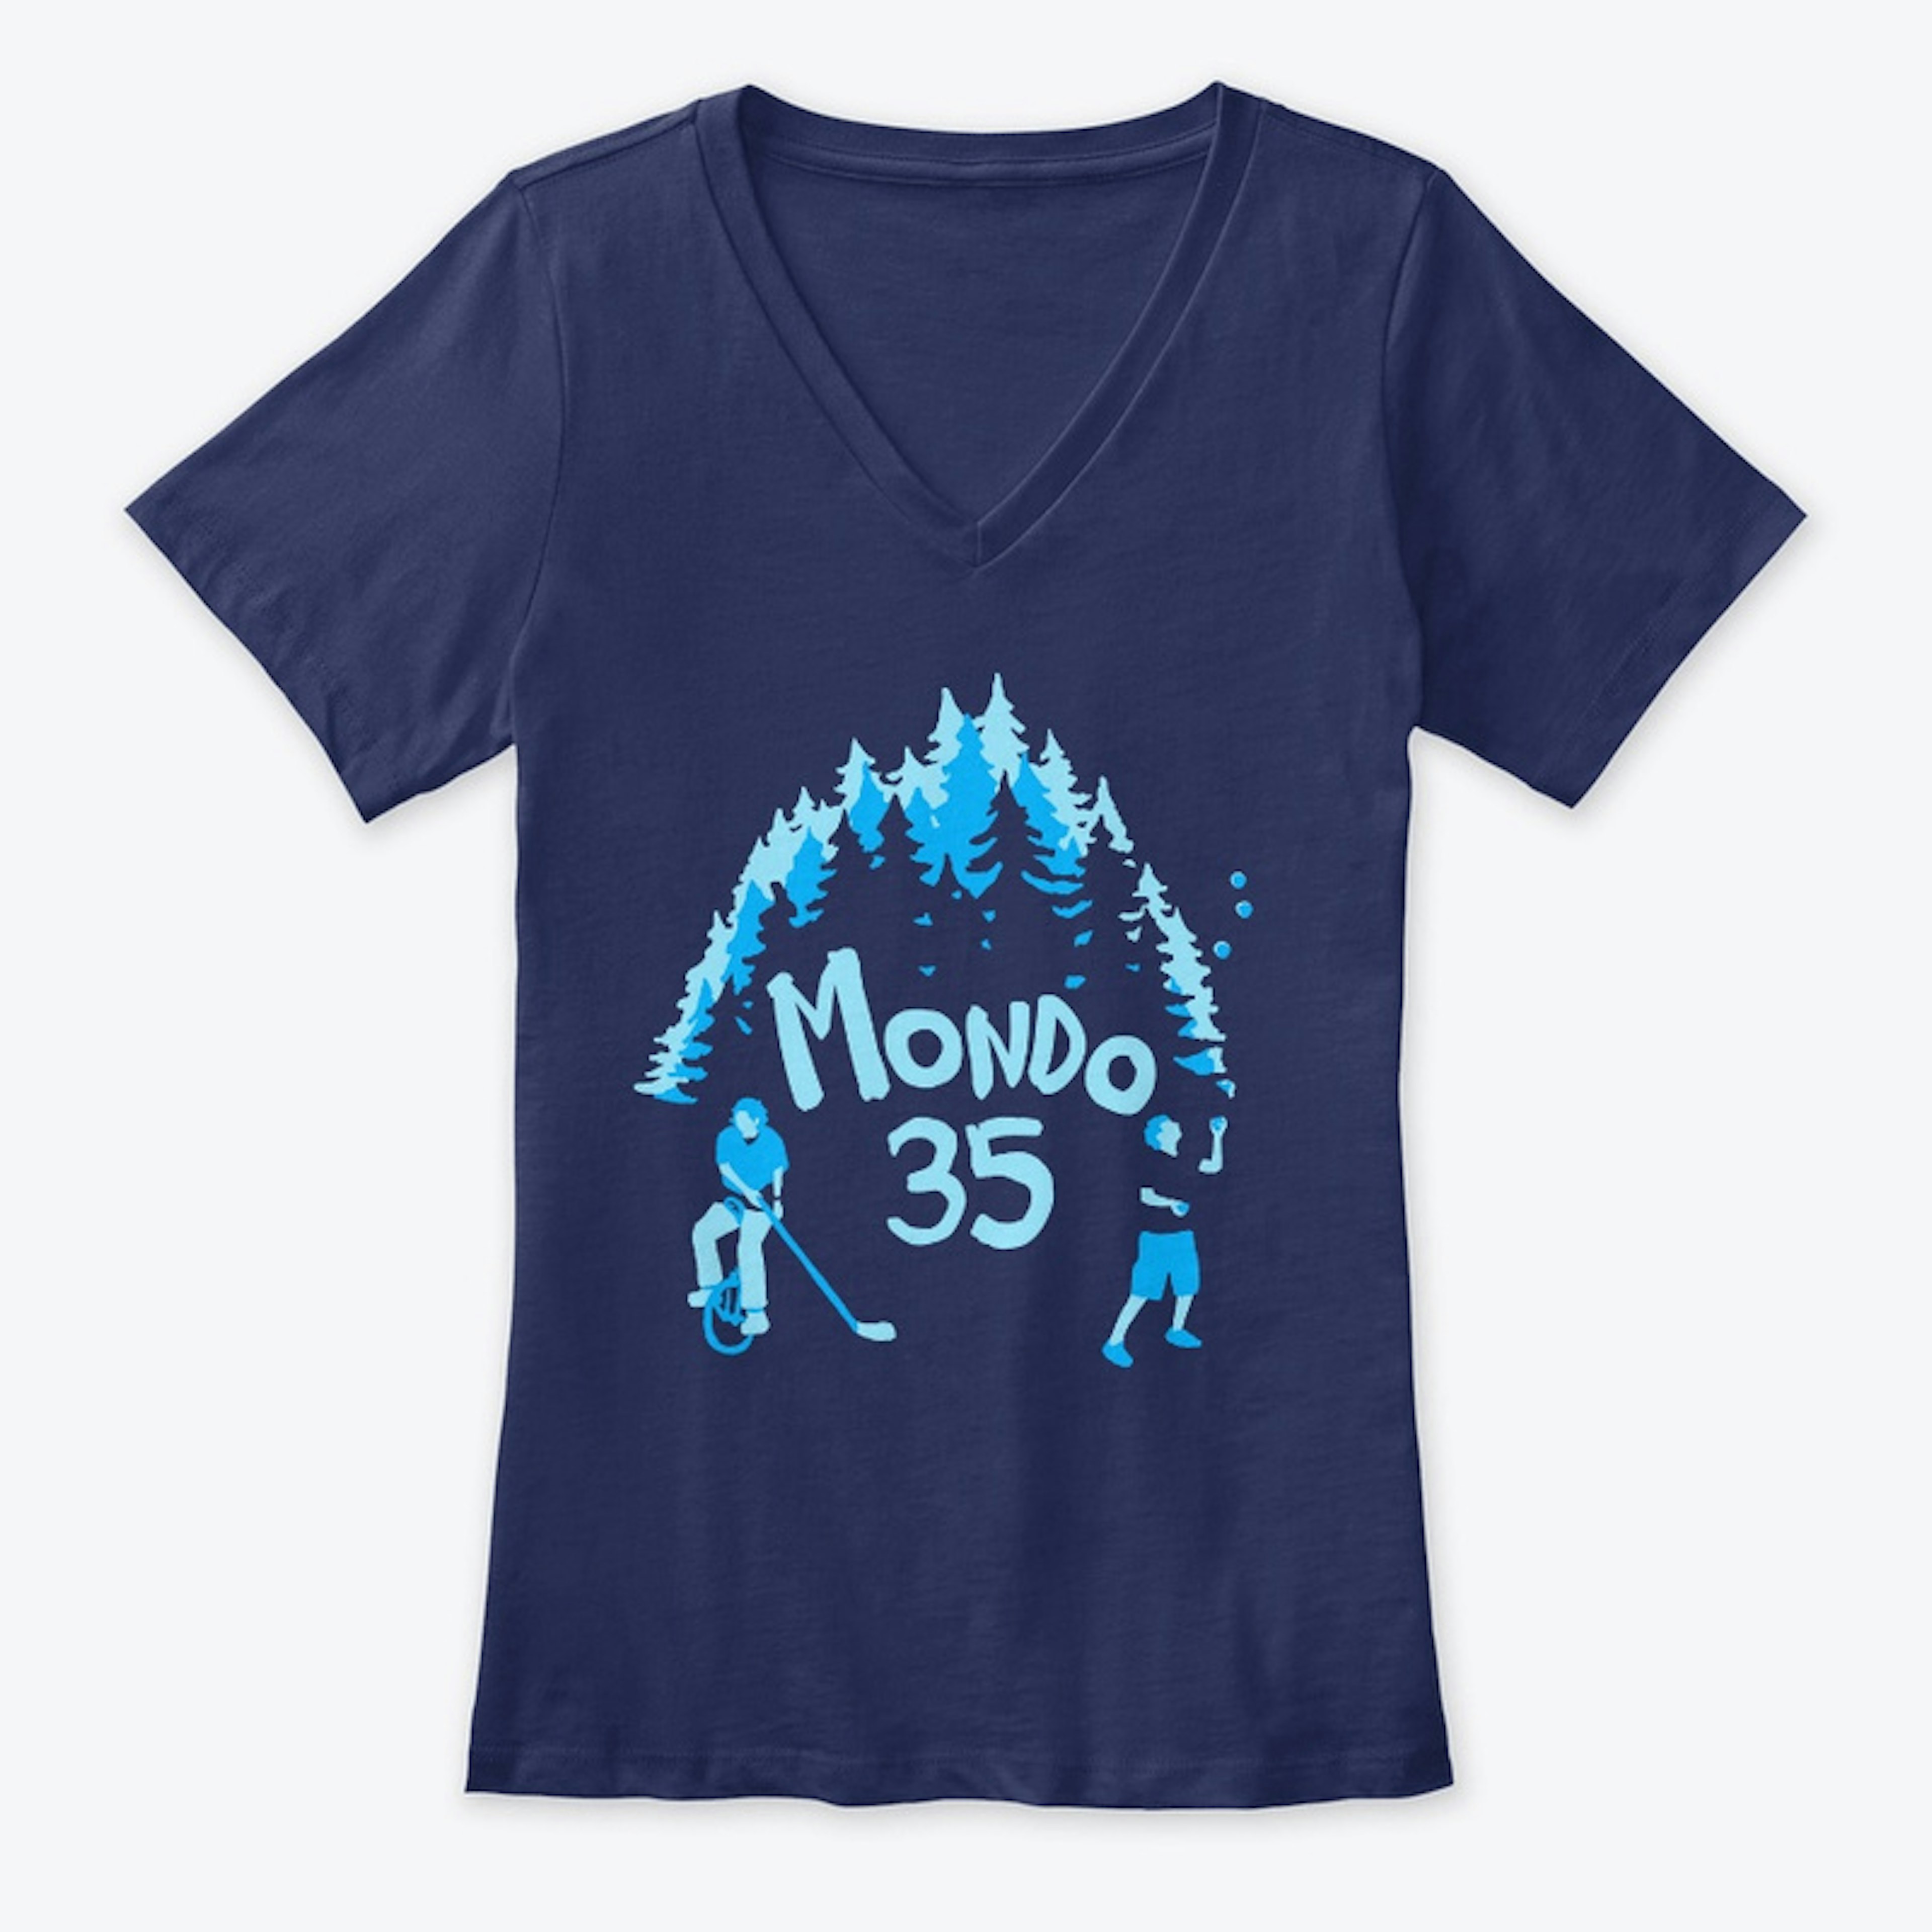 Mondo 35: Women's V-Neck Tee